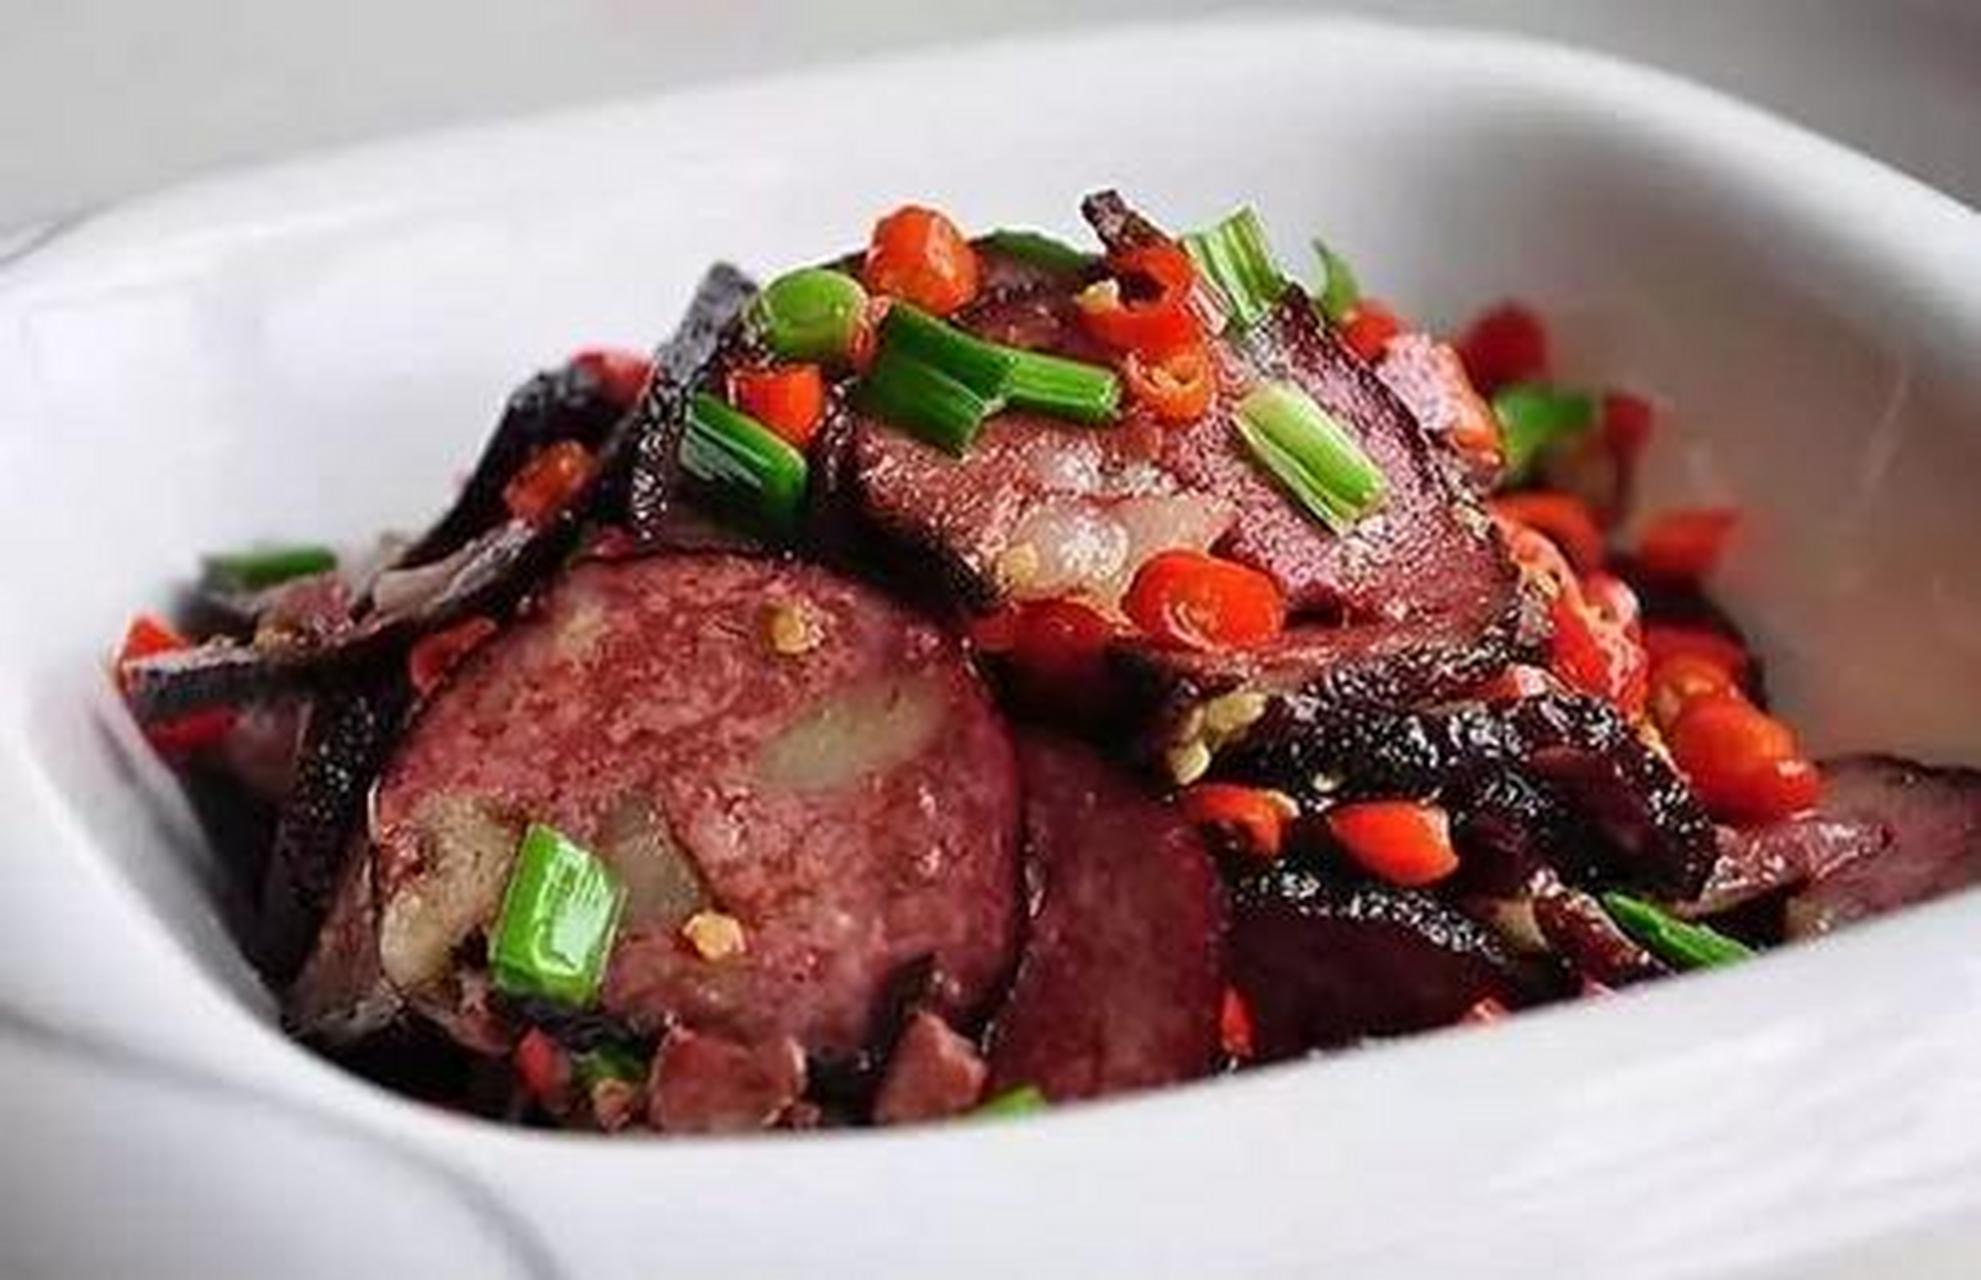 邵阳猪血丸子是邵阳传统名菜,归属于湘菜系列产品;名菜历史典故来历